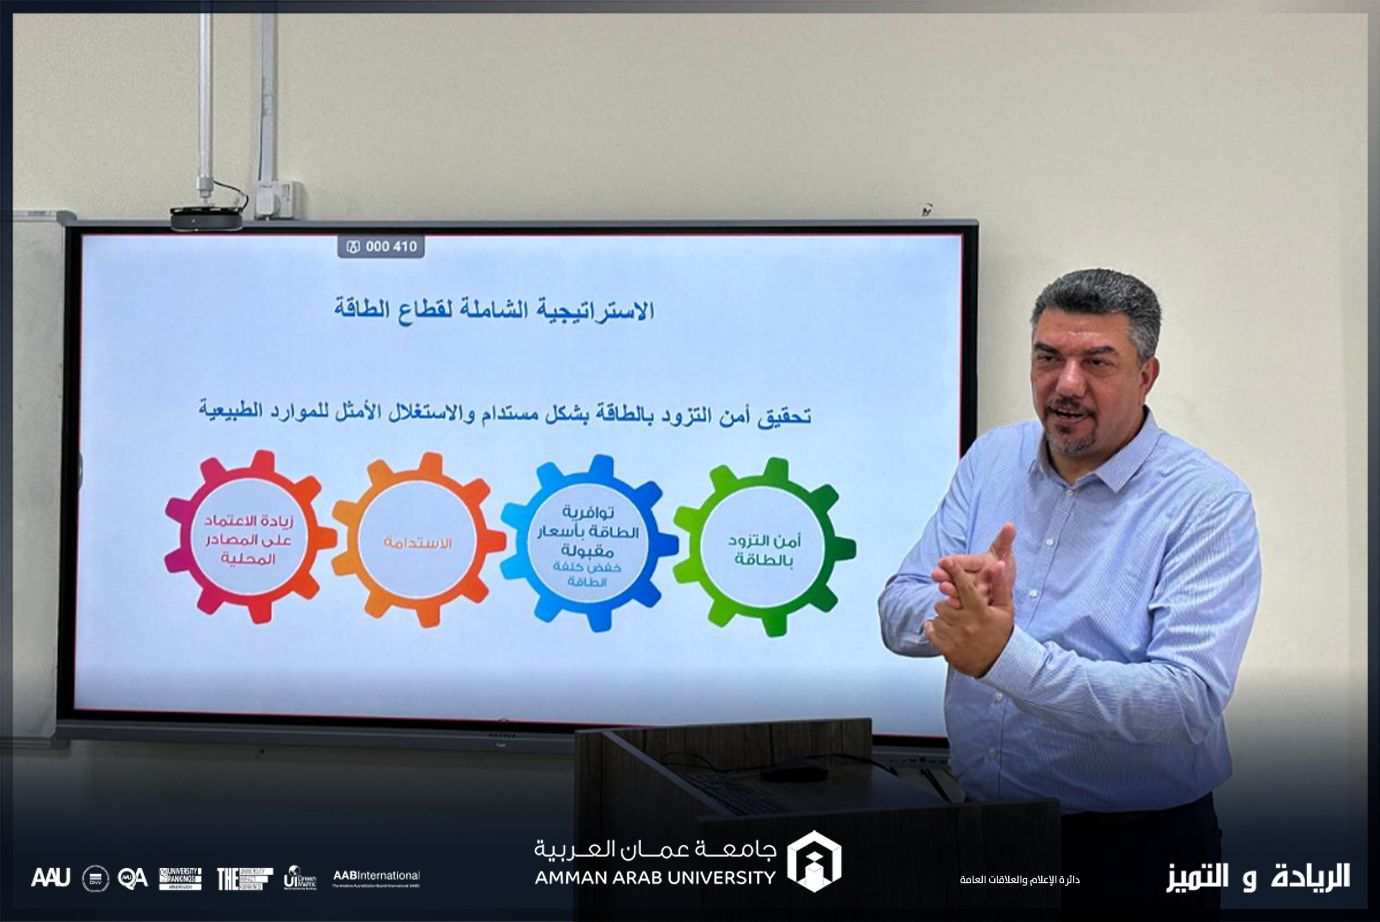 هندسة الطاقة المتجددة في "عمان العربية" يستضيف مستشار الطاقة الدكتور إياد السرطاوي1